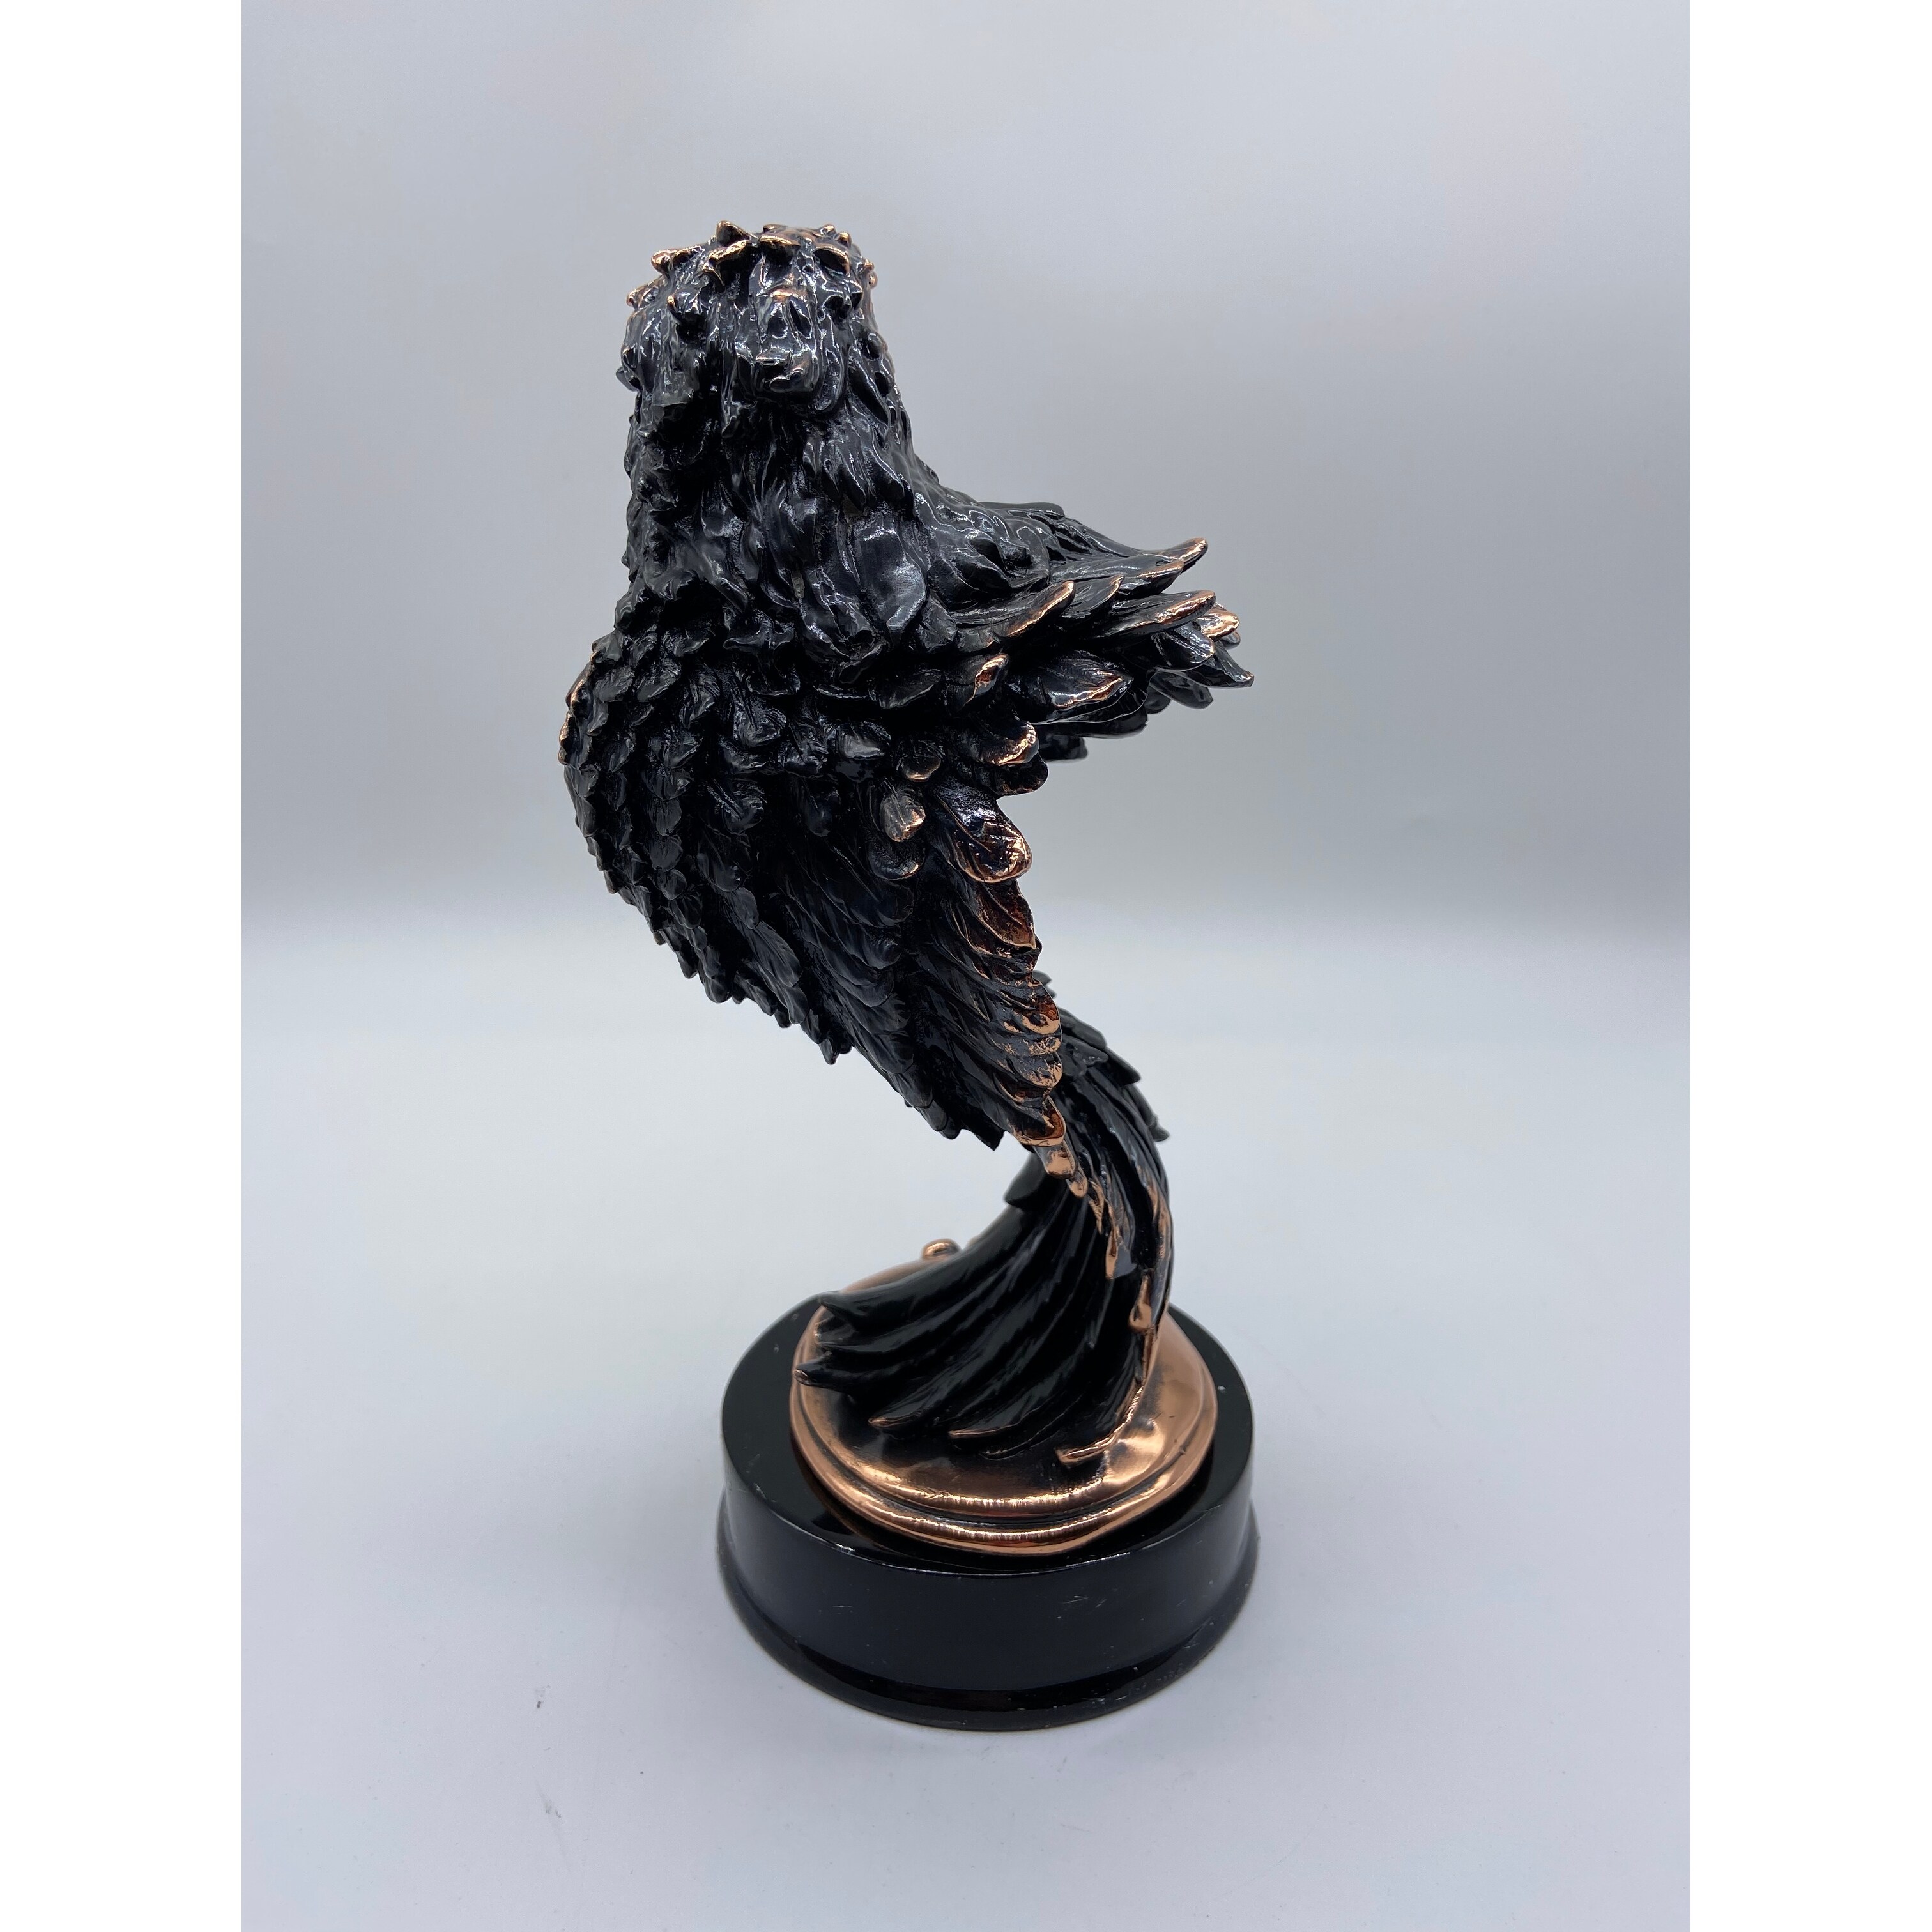 Spiral Eagle Bust on Pedestal